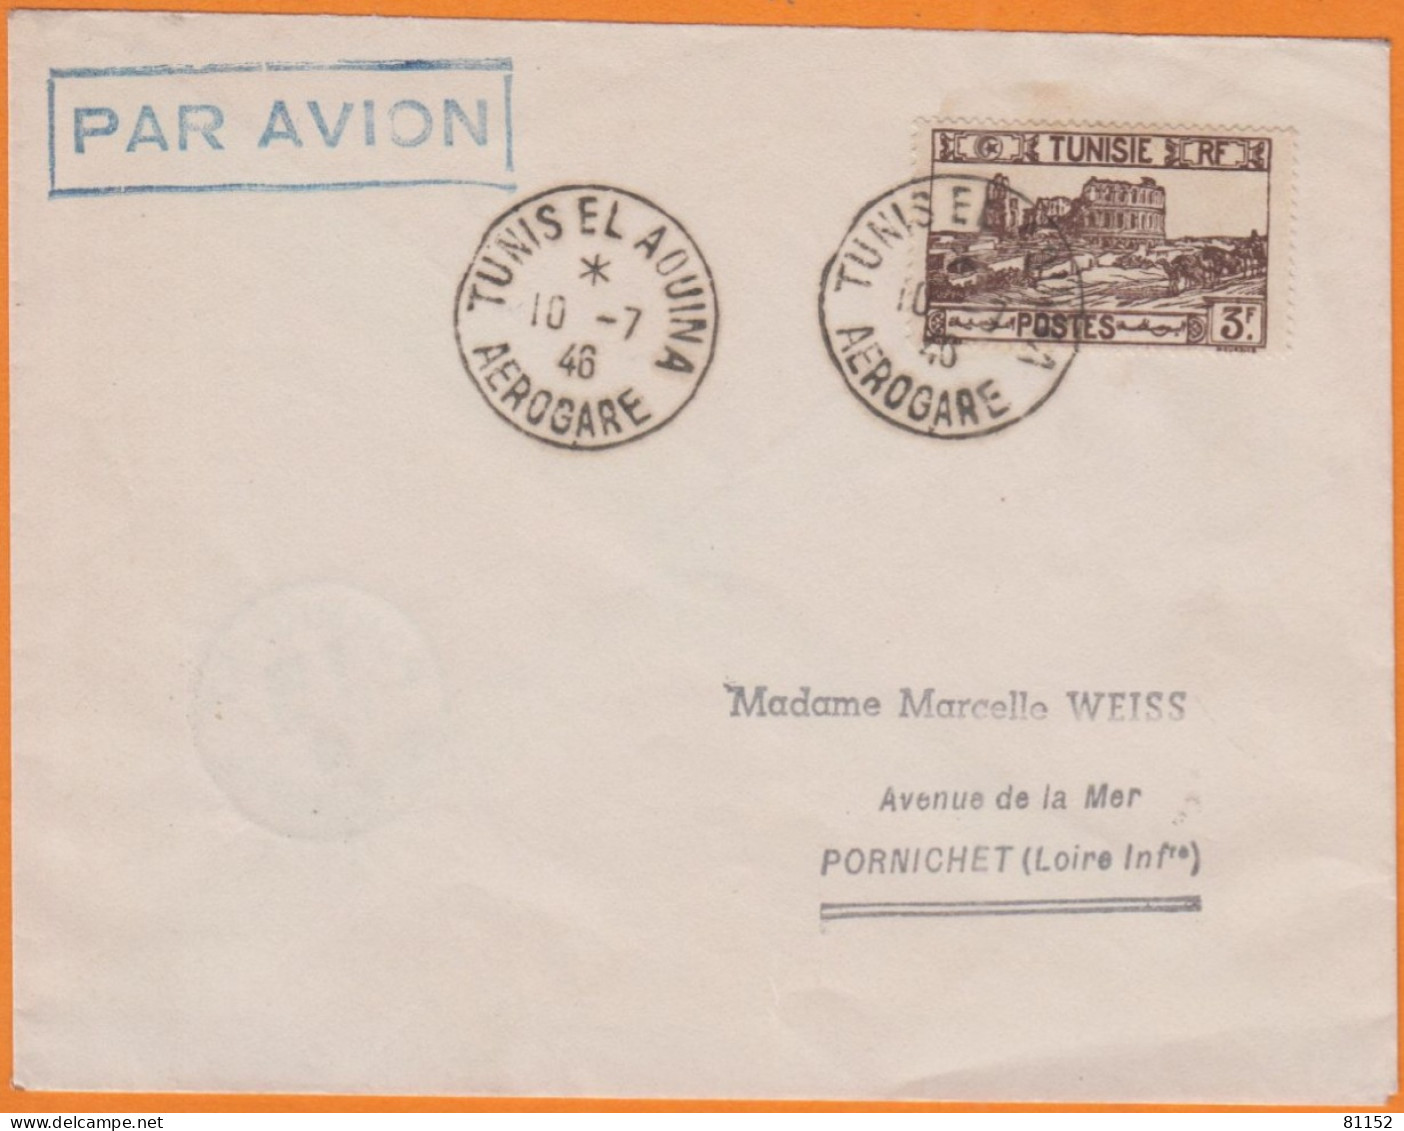 Lettre PAR AVION De TUNIS EL AOUINA  AEROGARE   Le 10 7 1947   Pour  44 PORNICHET  Affranchie à 3F - Aéreo